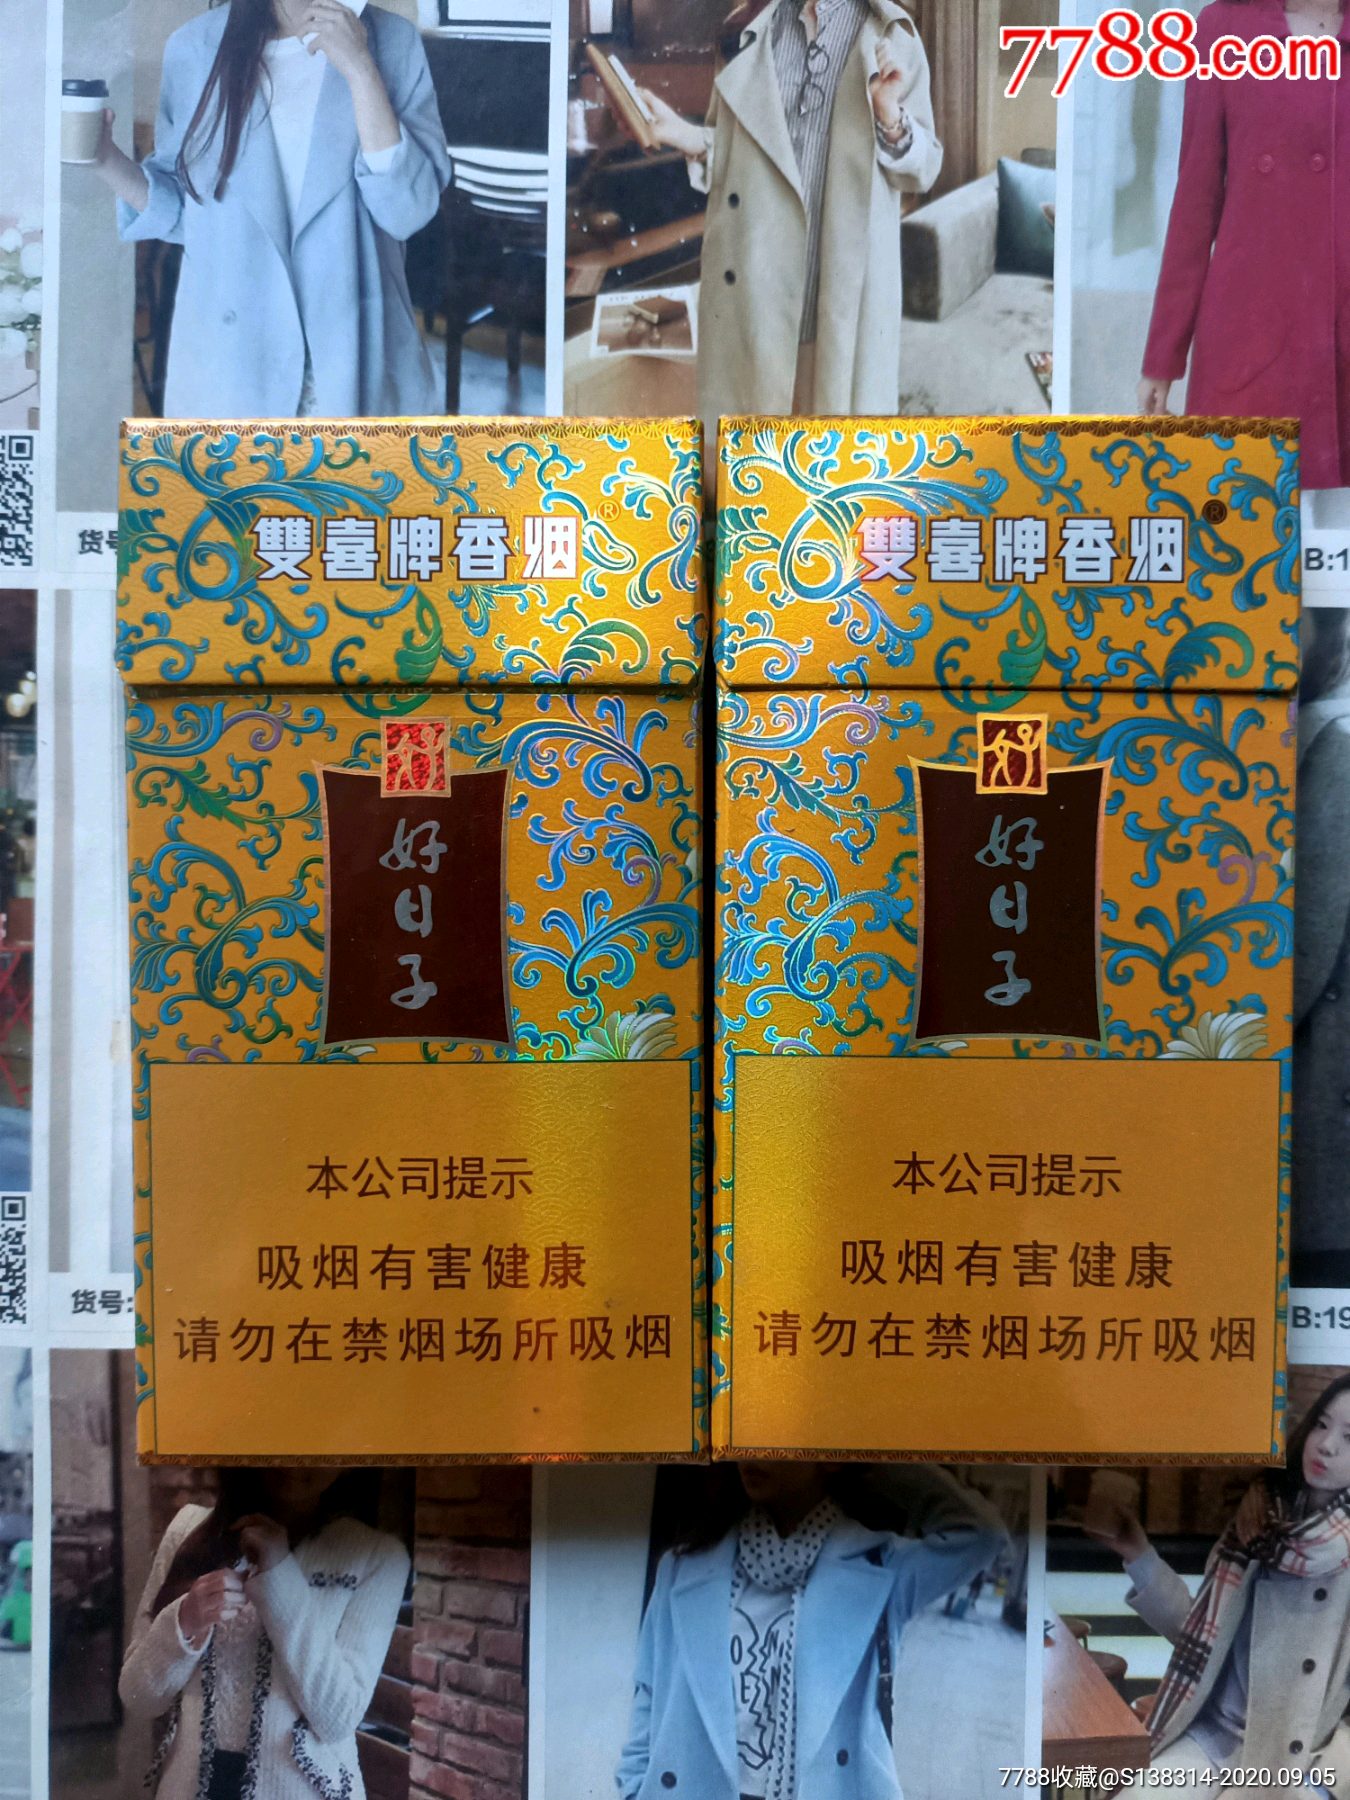 广东双喜好日子祥云(16版一对)-价格:9元-se75265119-烟标/烟盒-零售